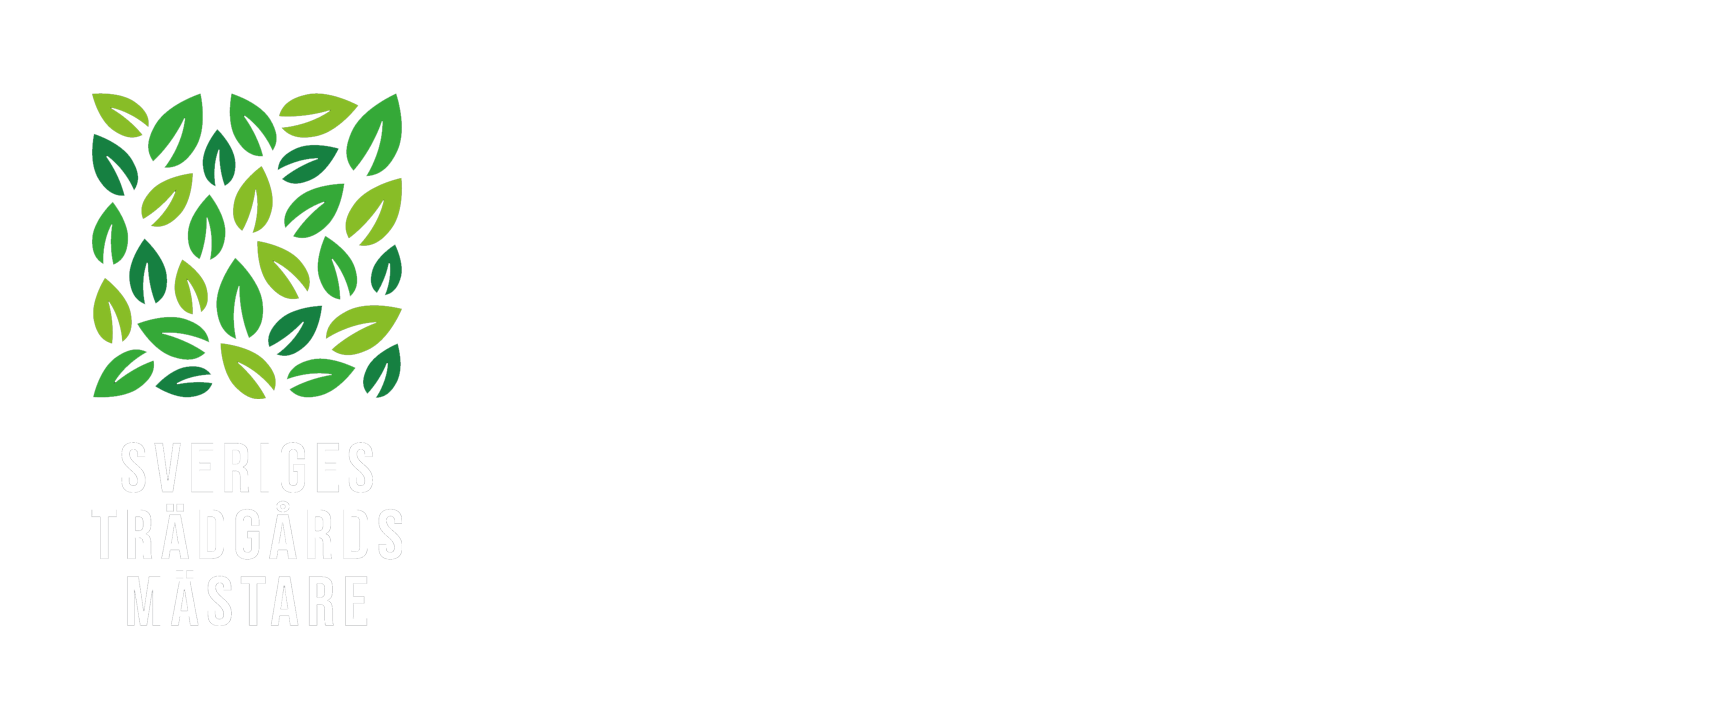 Löta Handelsträdgård logotype